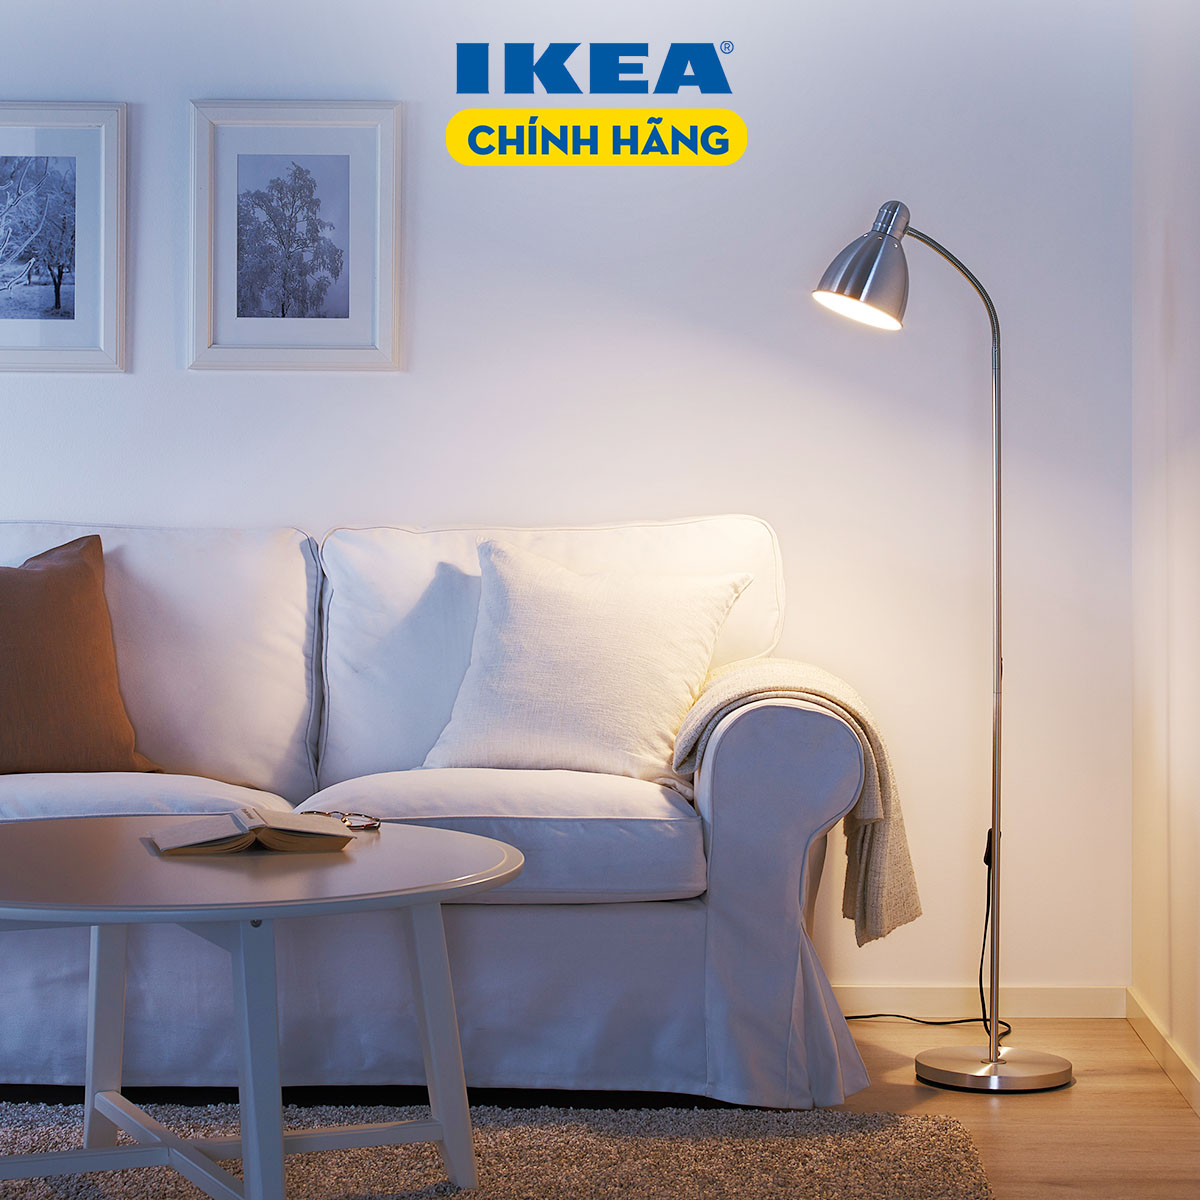 Đèn Ikea LERSTA là một trong những sản phẩm nội thất tuyệt vời của Ikea, mang đến ánh sáng ấm áp và tạo điểm nhấn cho không gian sống của bạn. Hãy khám phá bức ảnh liên quan để tìm kiếm bộ sưu tập đèn đẹp mắt của Ikea!